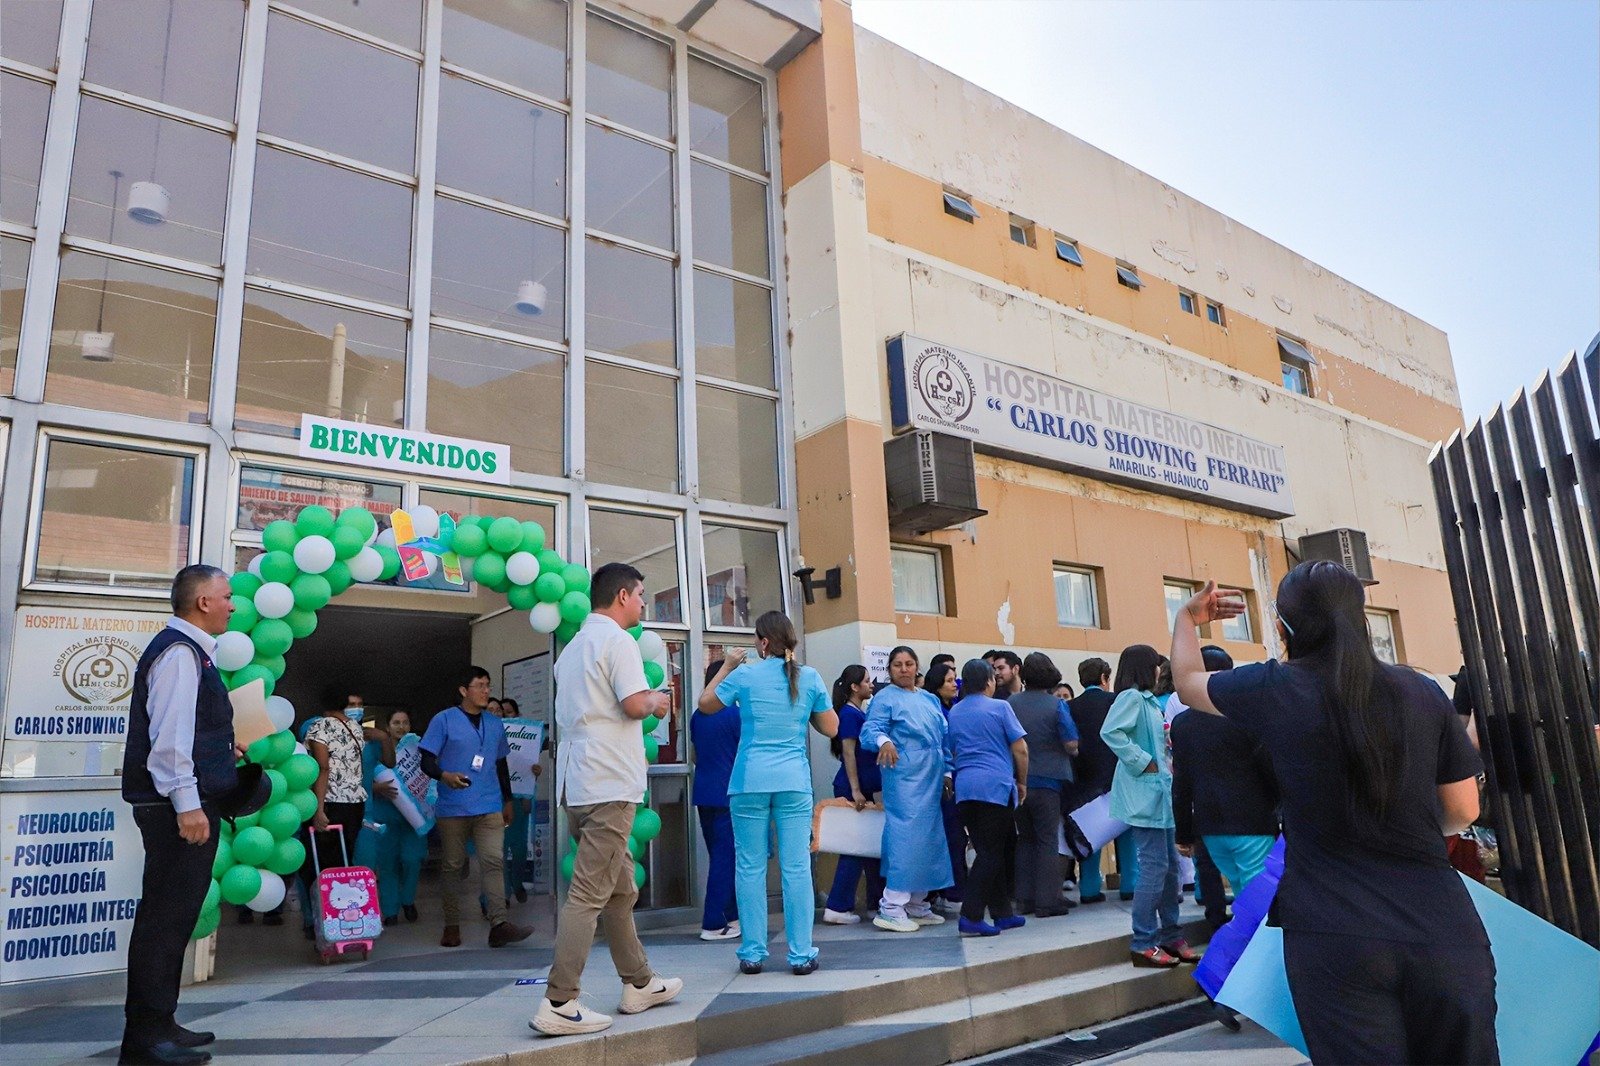 Con S/900 mil mejorarán infraestructura del Hospital Materno Infantil Carlos Showing